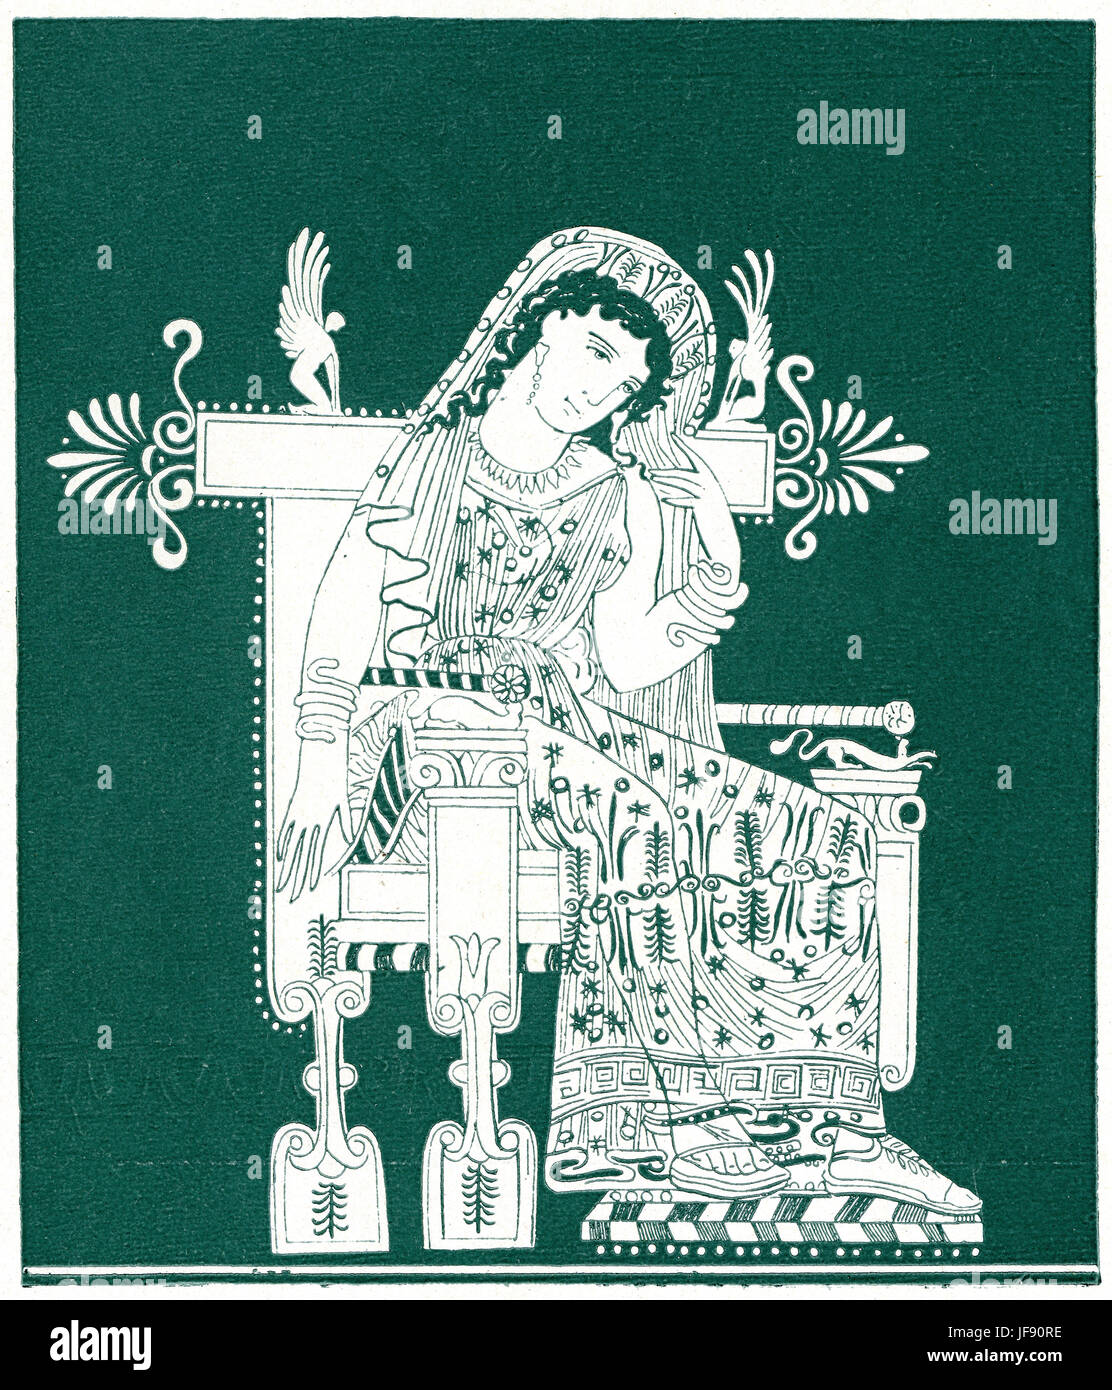 Phaedra, fille de Minos et de Pasiphaë, épouse de Thésée, dans la mythologie grecque. 19ème siècle illustration dans le style de l'ancienne poterie grecque figure rouge. Banque D'Images